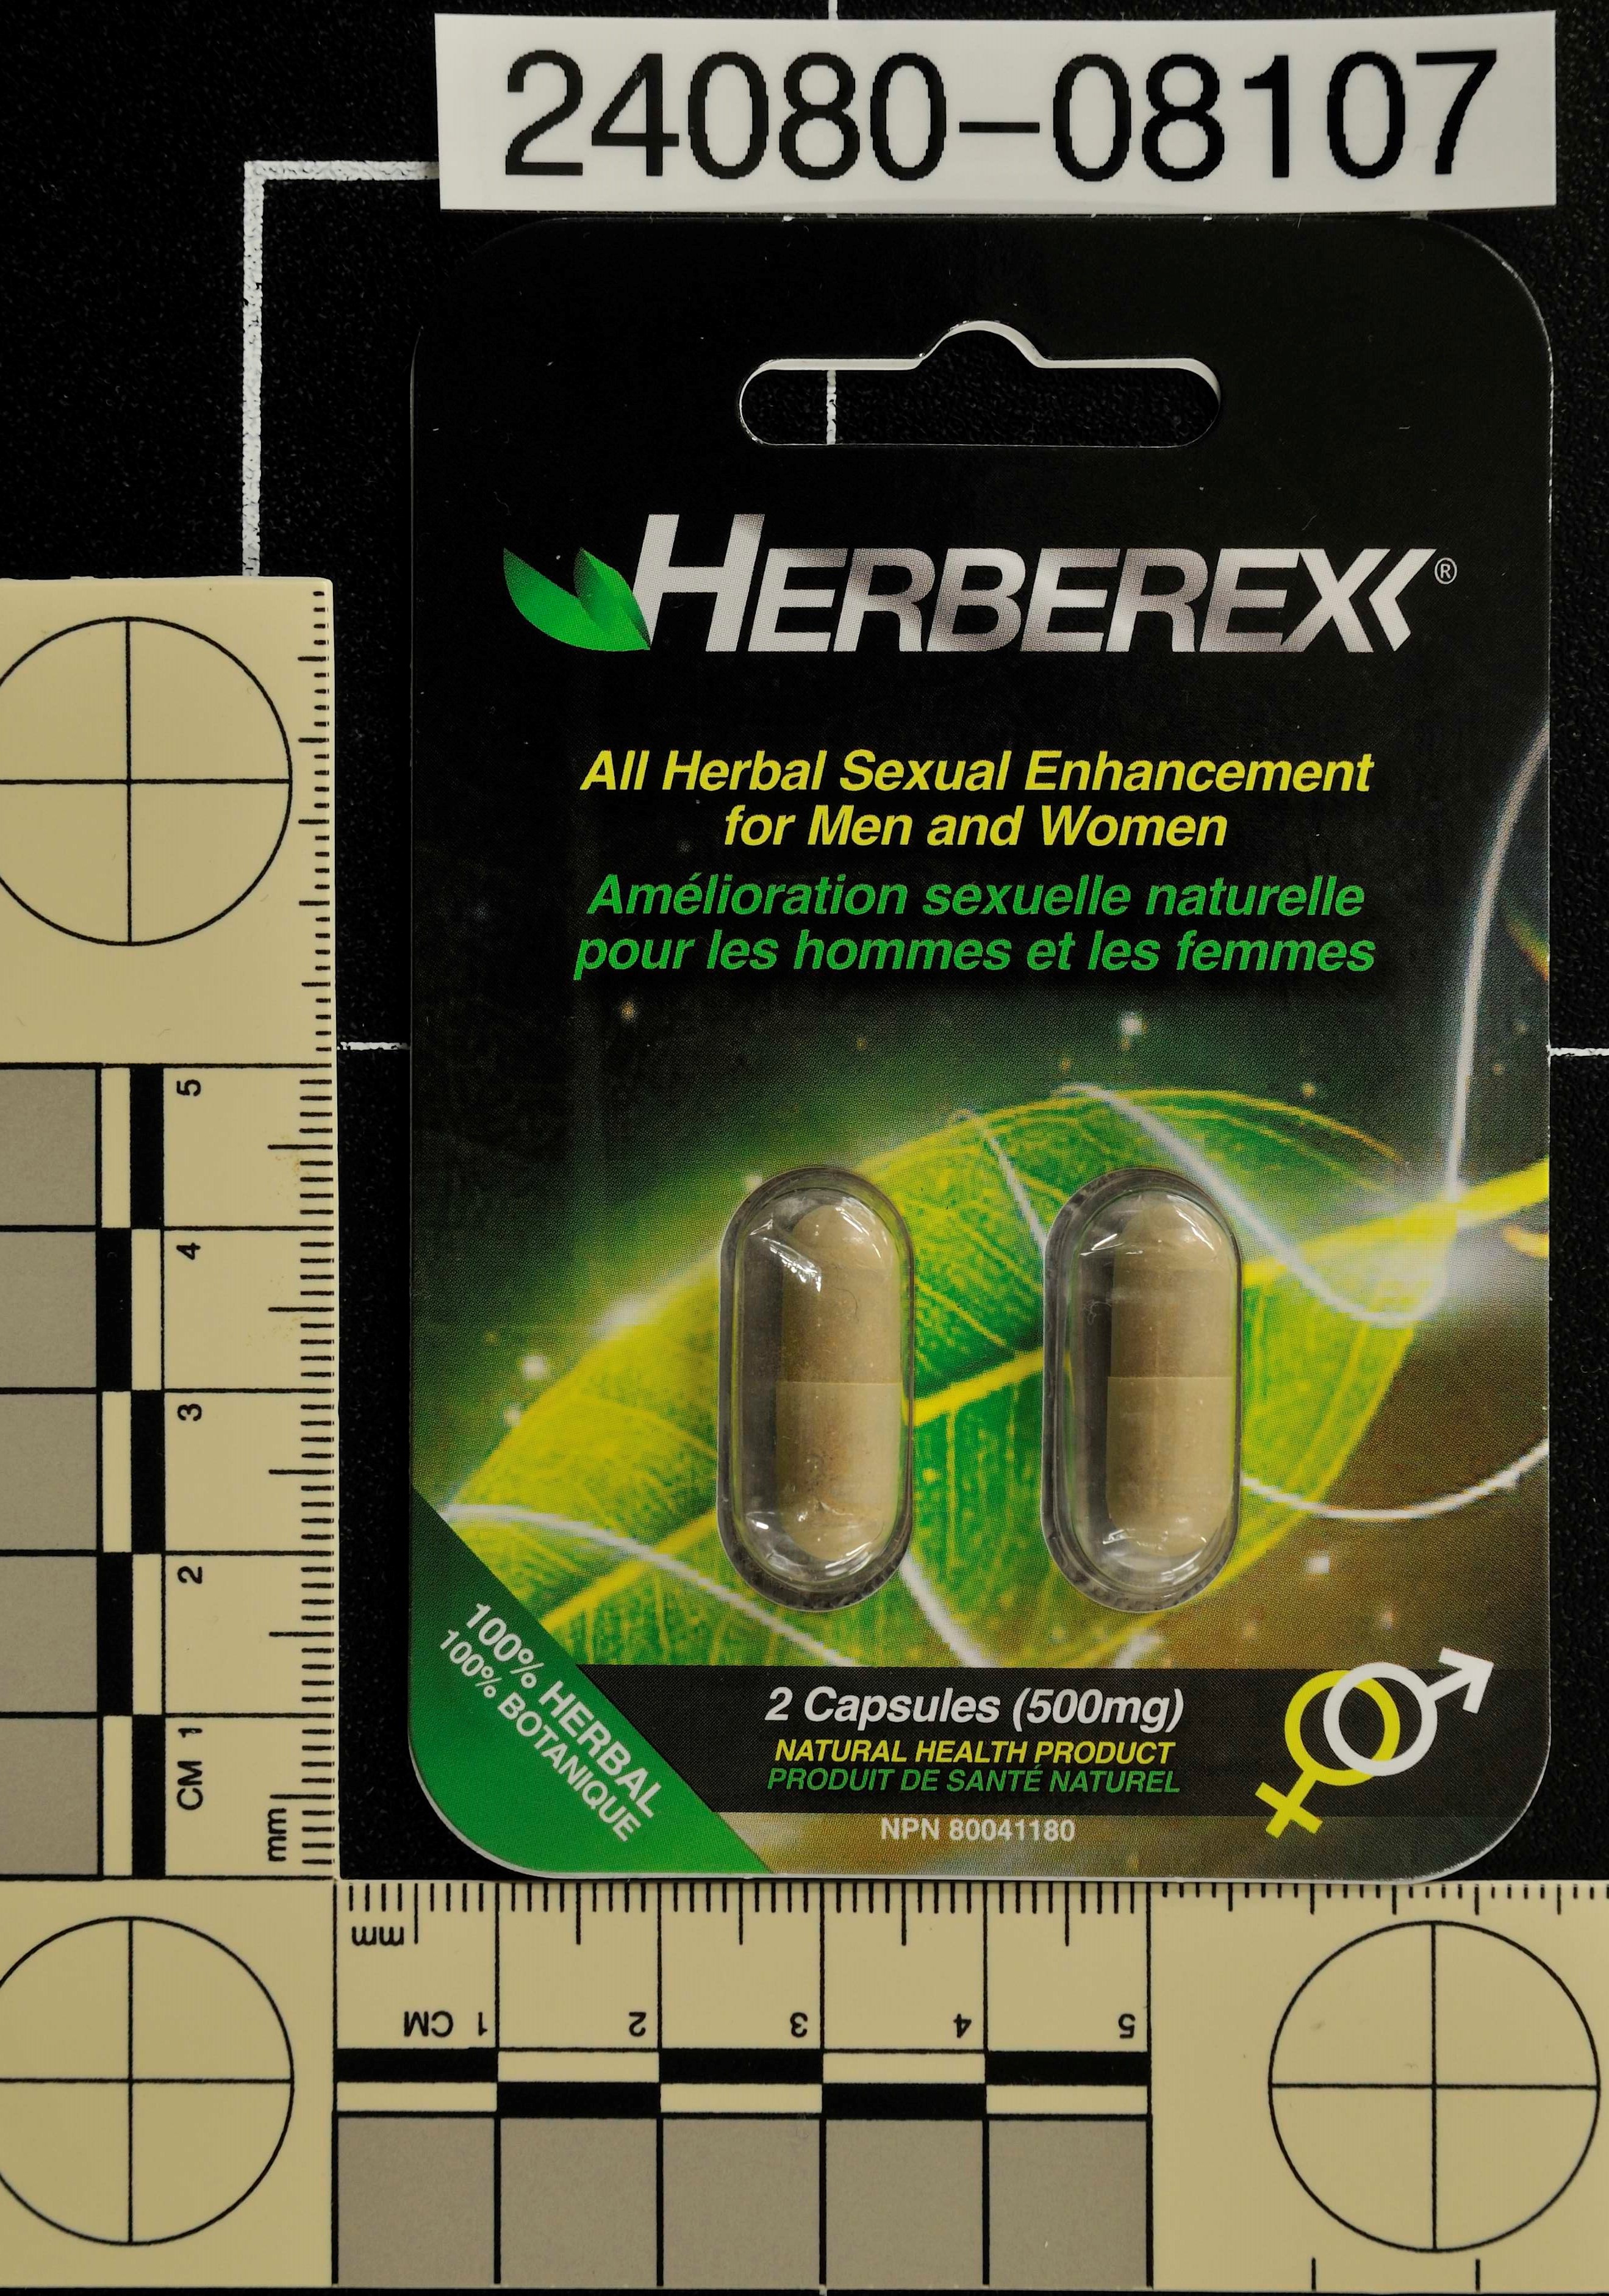 Billede af det ulovlige produkt: Herberex